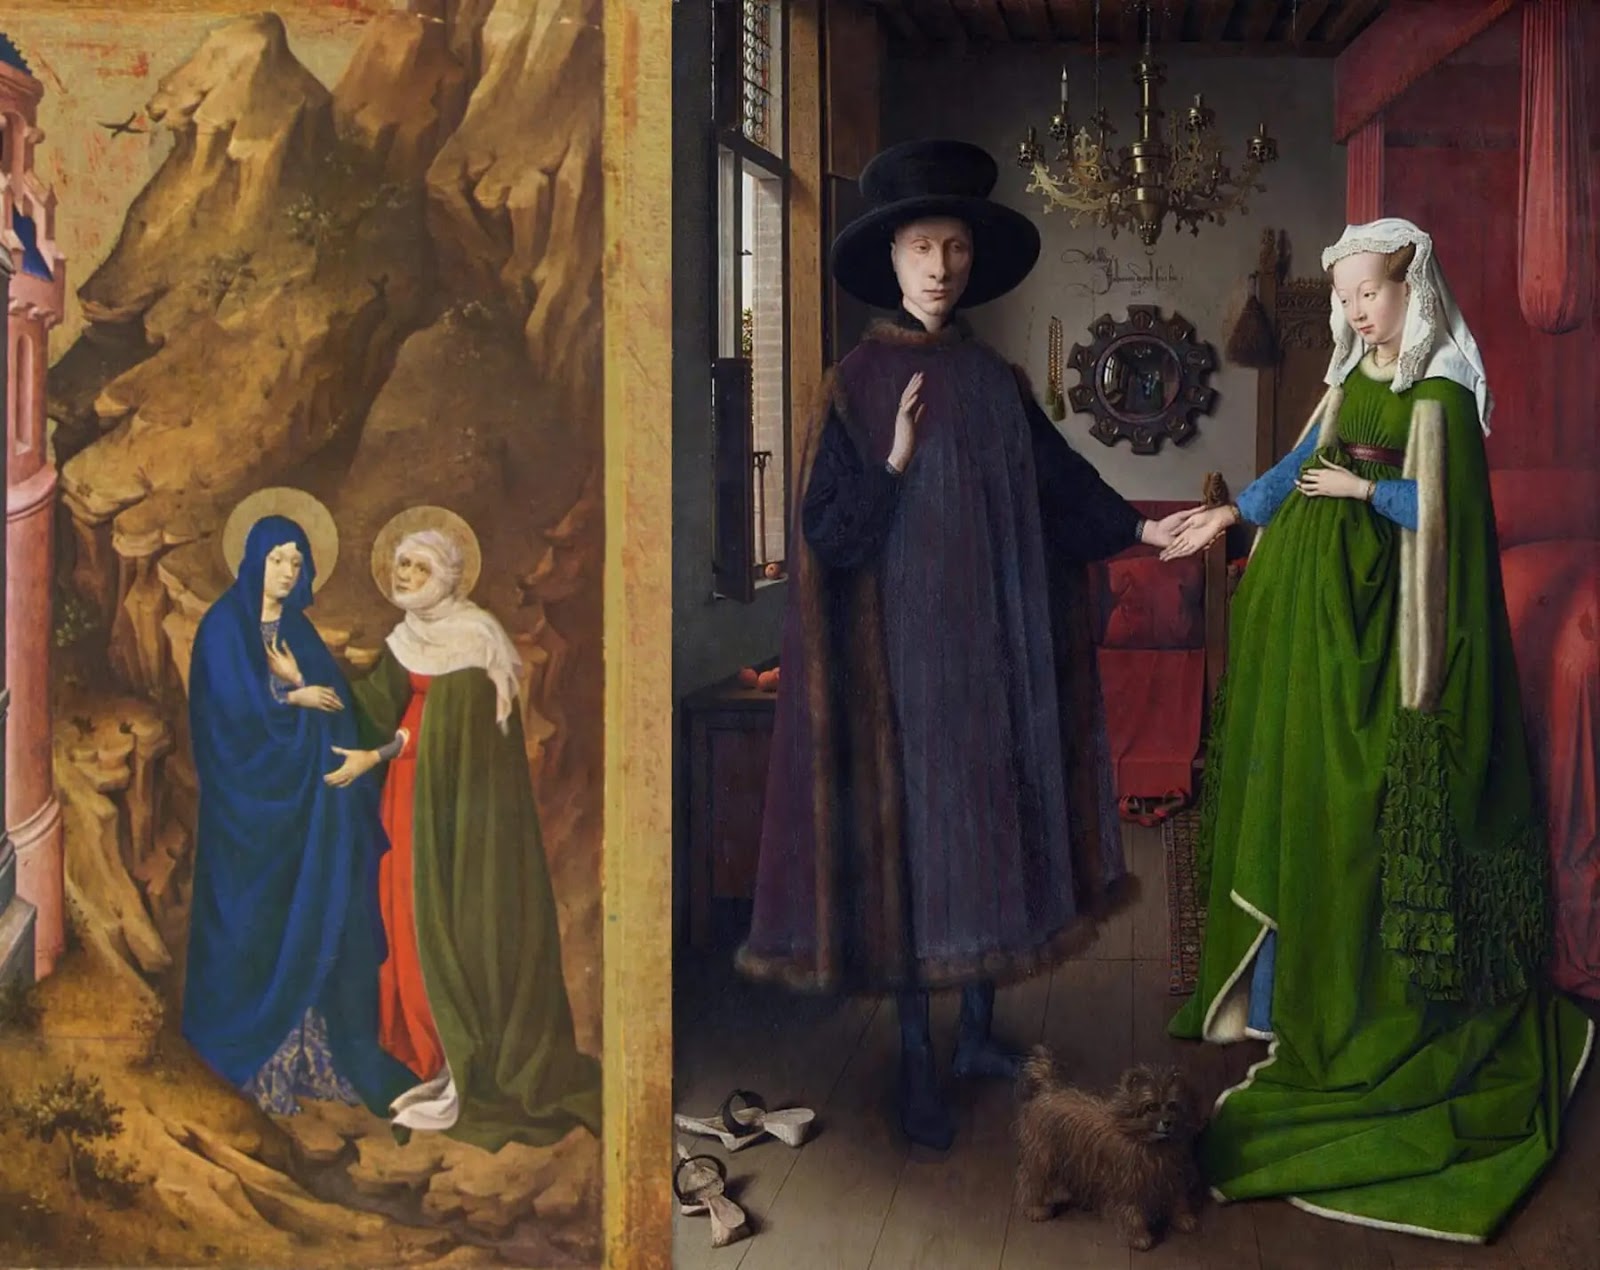 Слева: Мельхиор Брудерлам. Встреча святой Марии и святой Елизаветы (фрагмент алтарной картины). 1398.Справа: Ян ван Эйк. Чета Арнольфини. 1434.